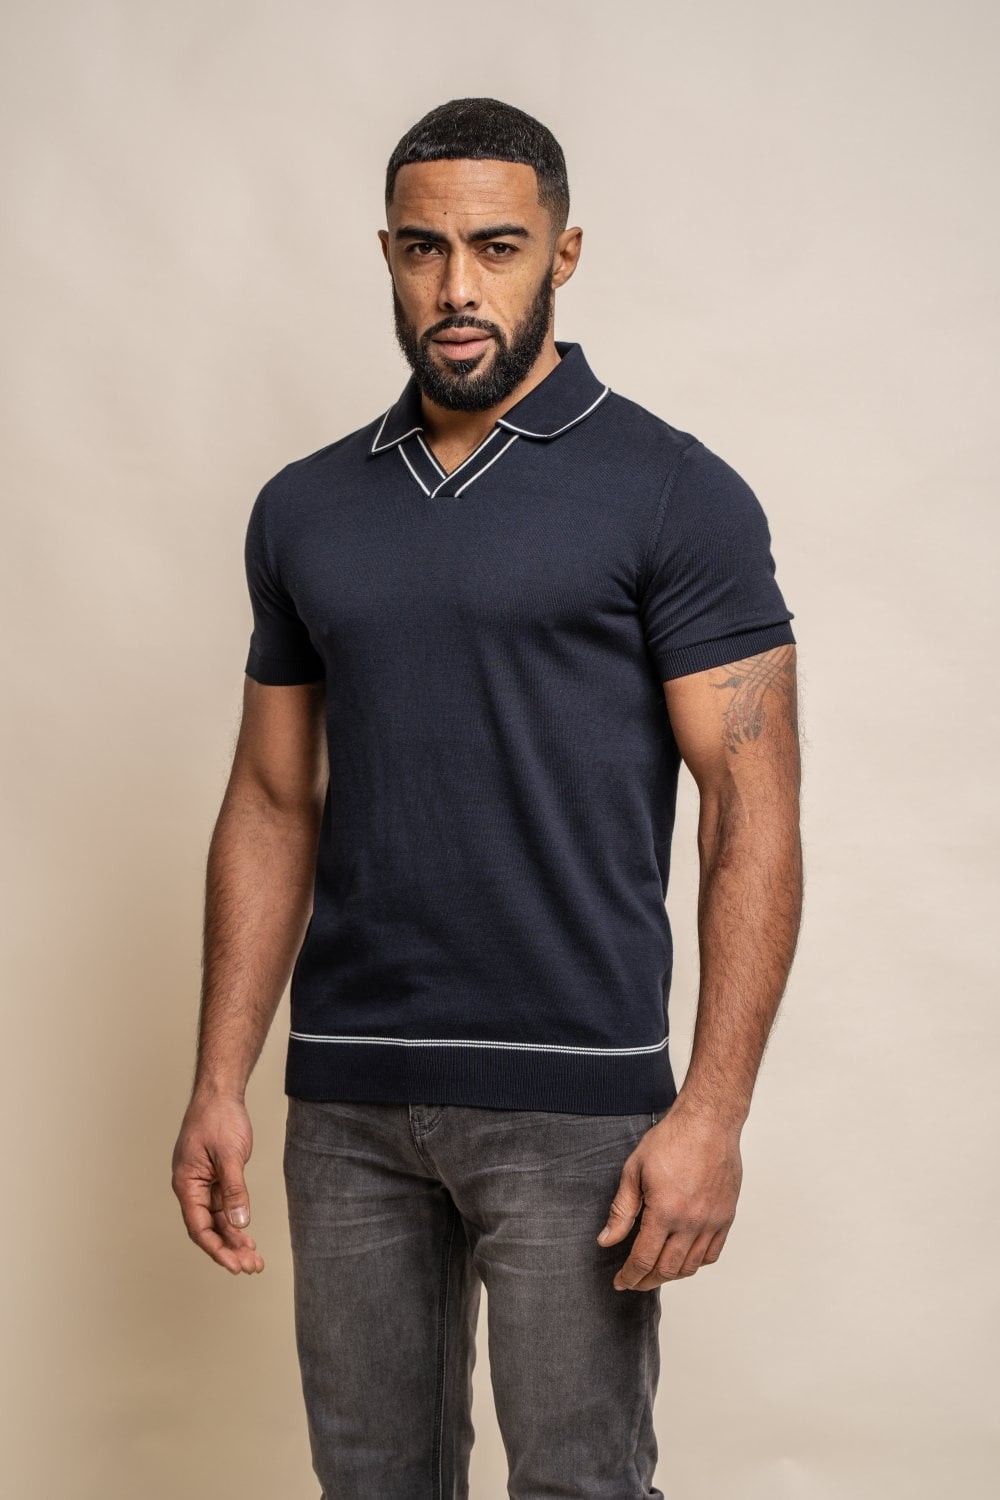 Men's Cotton Knitted Short Sleeve Polo T-shirt - SEPPI